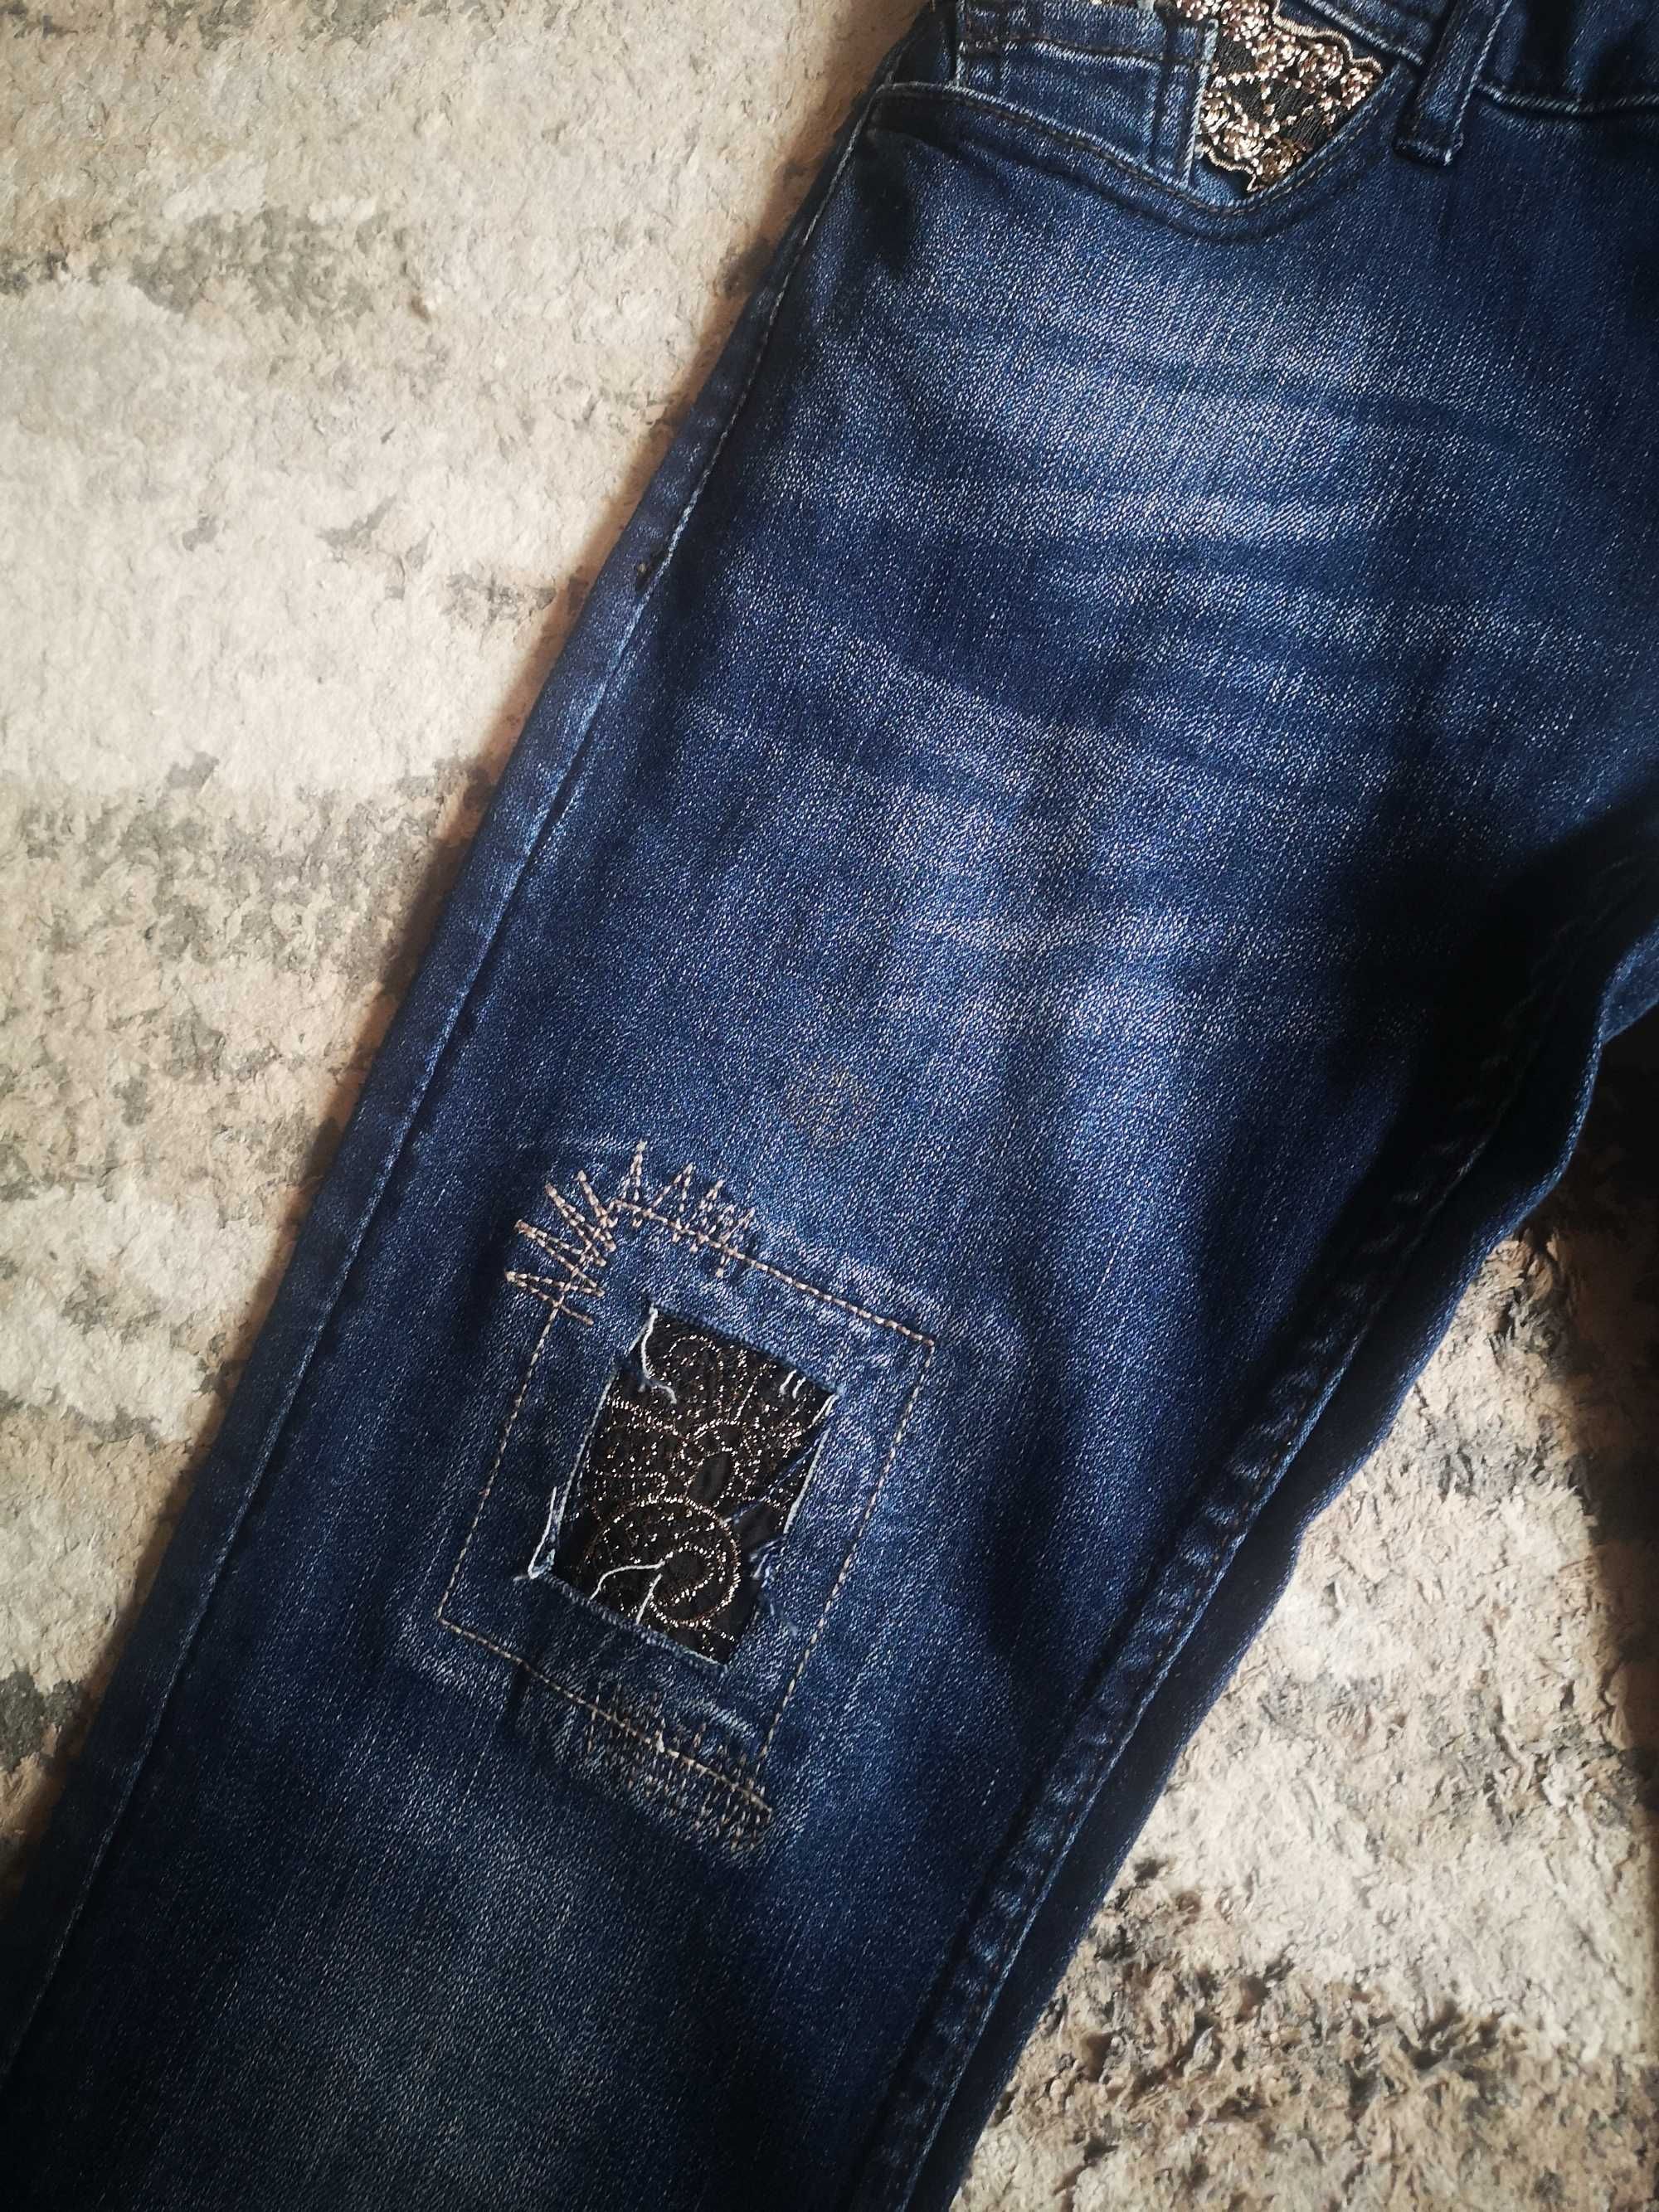 Desigual jeansy xs/s nowe z metkami